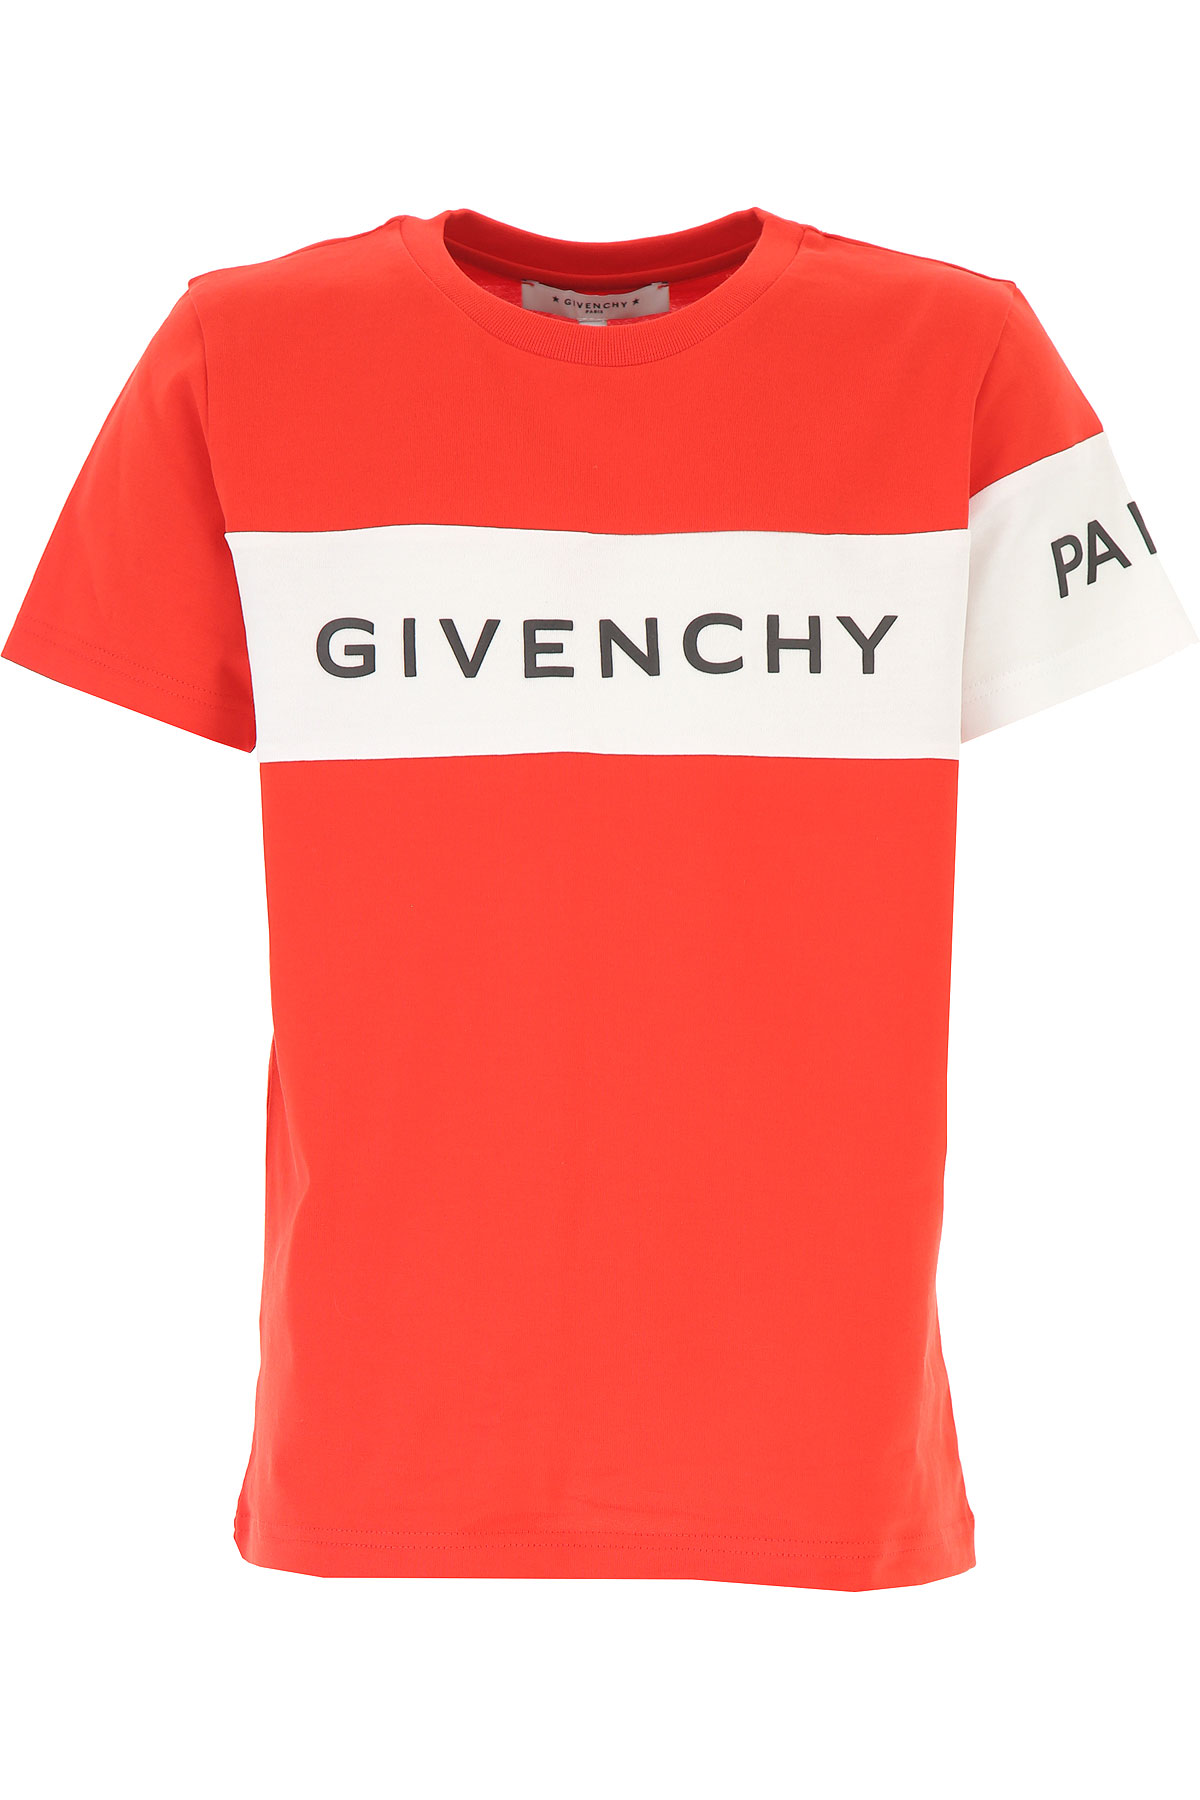 Givenchy Kinder T-Shirt für Jungen, Rot, Baumwolle, 2017, 10Y 14Y 4Y 6Y 8Y